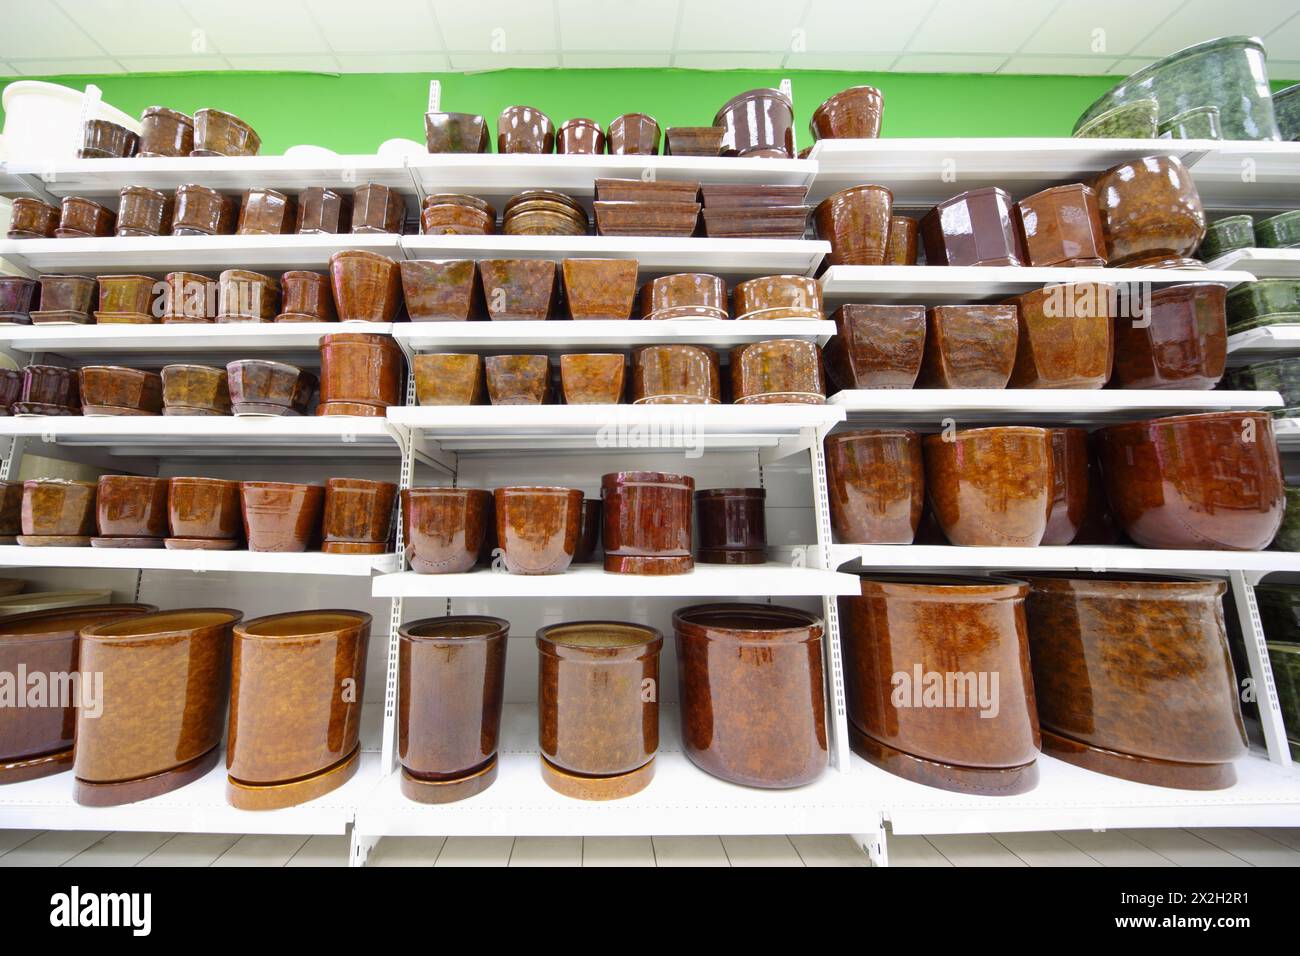 Regale mit verschiedenen braunen Töpfen in einem großen Supermarkt Stockfoto